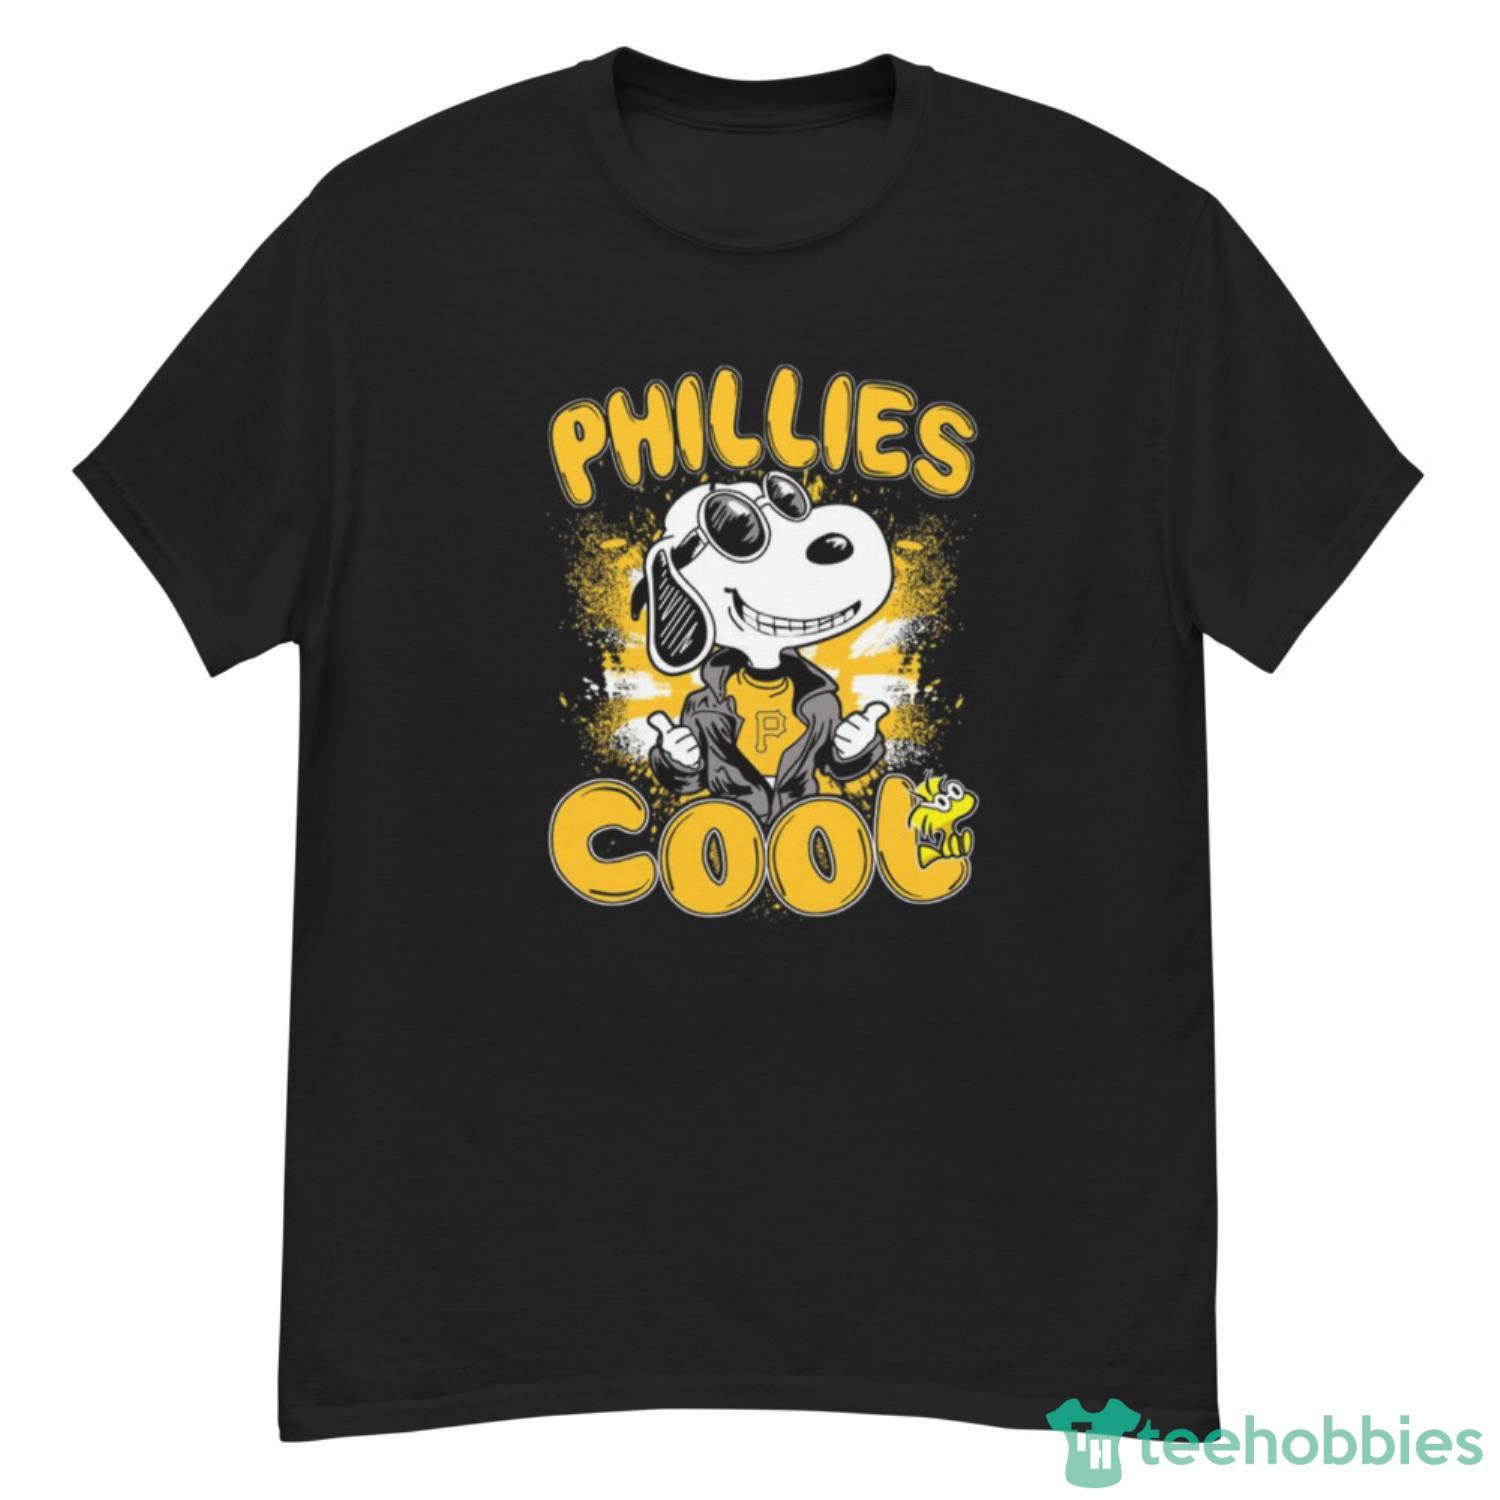 MLB Baseball Pittsburgh Pirates Cool Snoopy Shirt T Shirt - G500 Men’s Classic T-Shirt